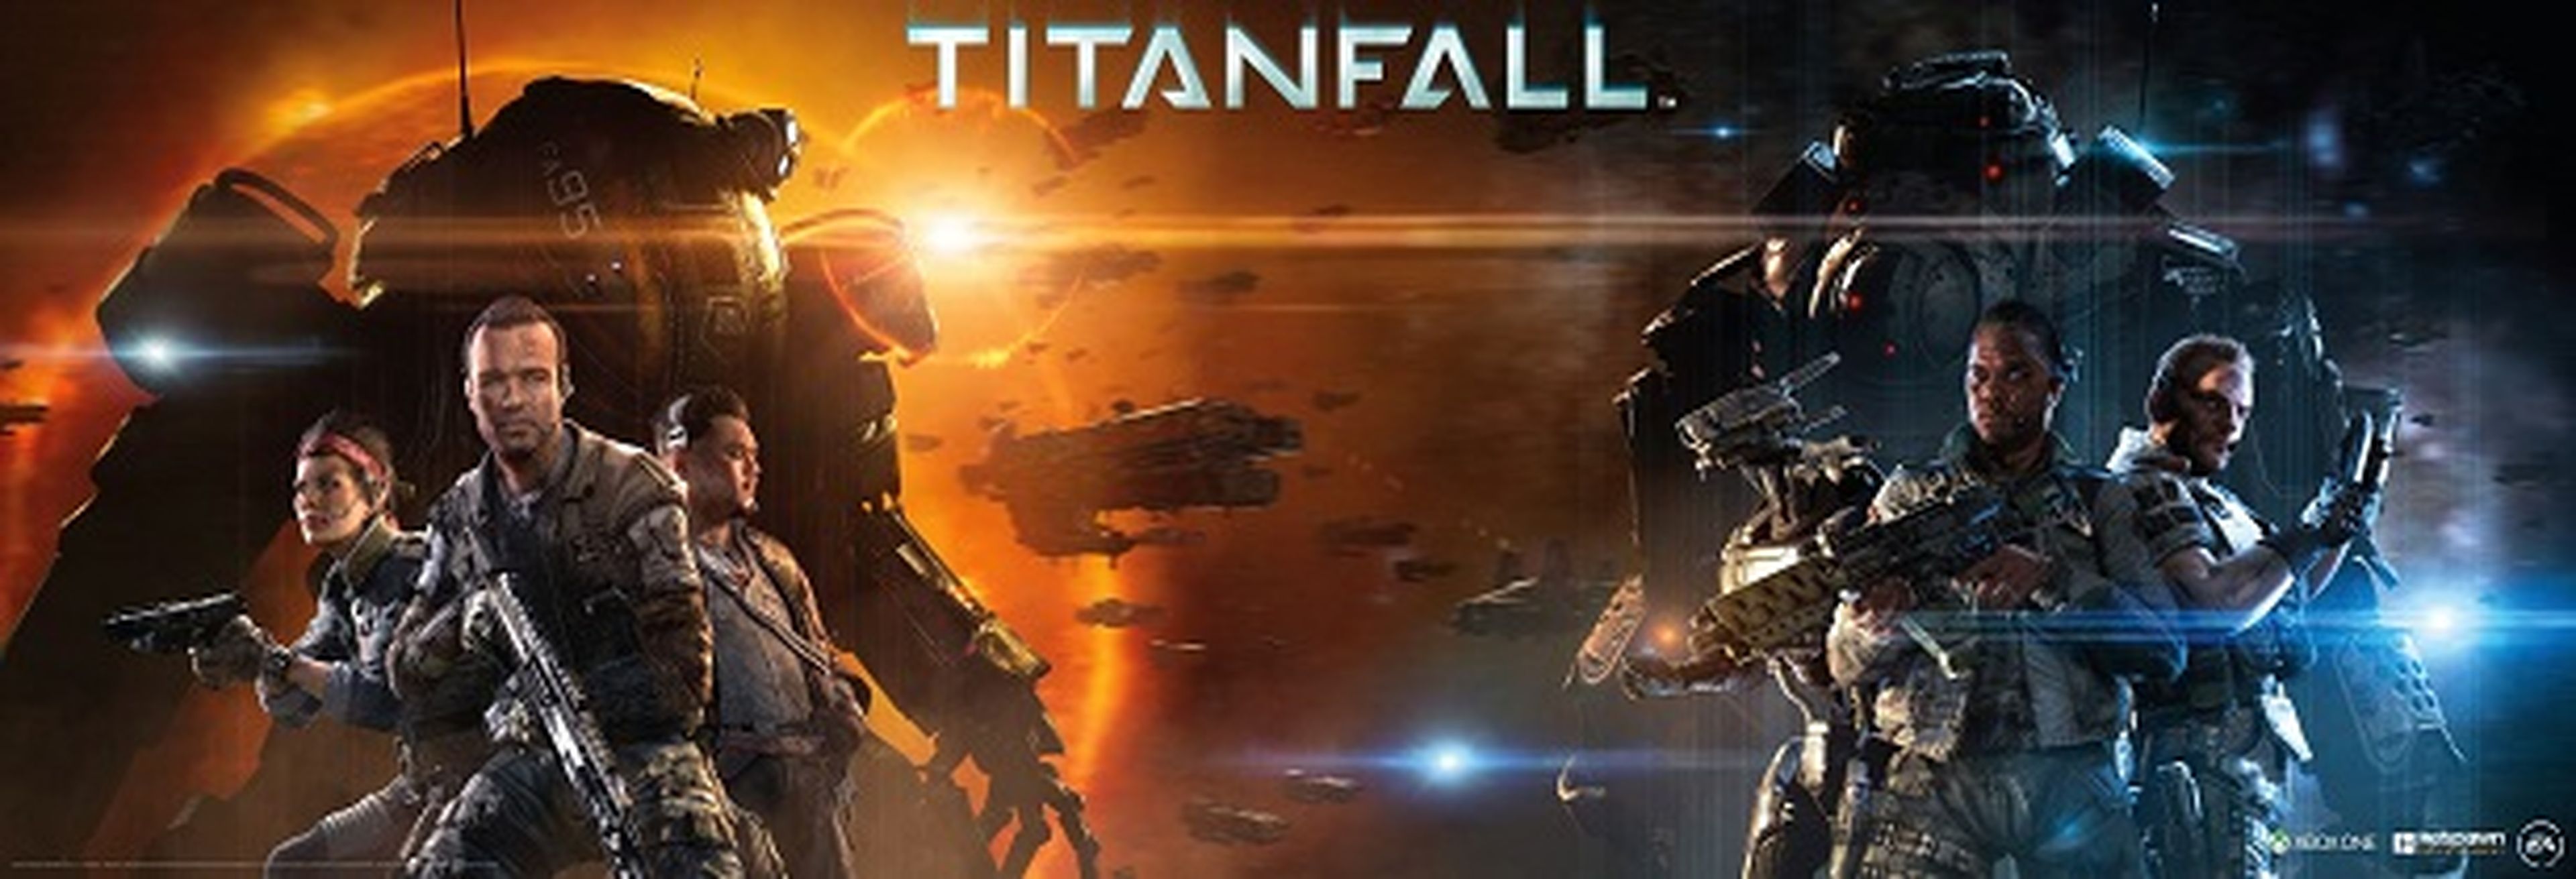 Las facciones de Titanfall: La Milicia y el IMC